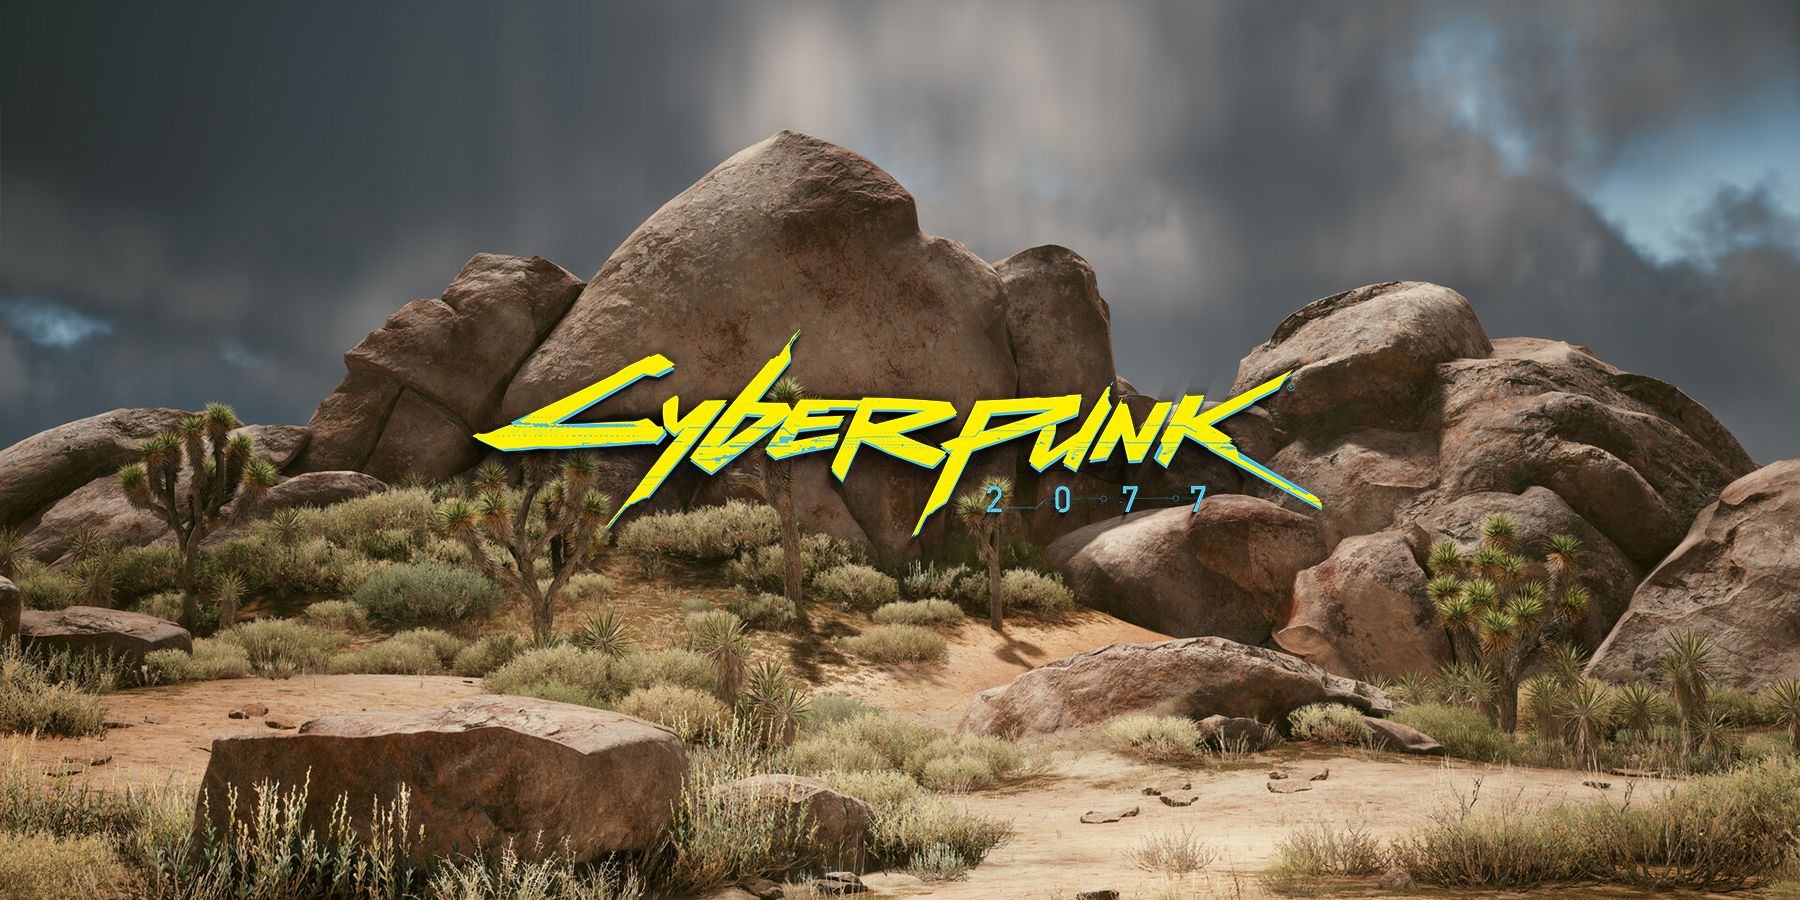 cyberpunk 2077 talking rock bug glitch badlands yells at player